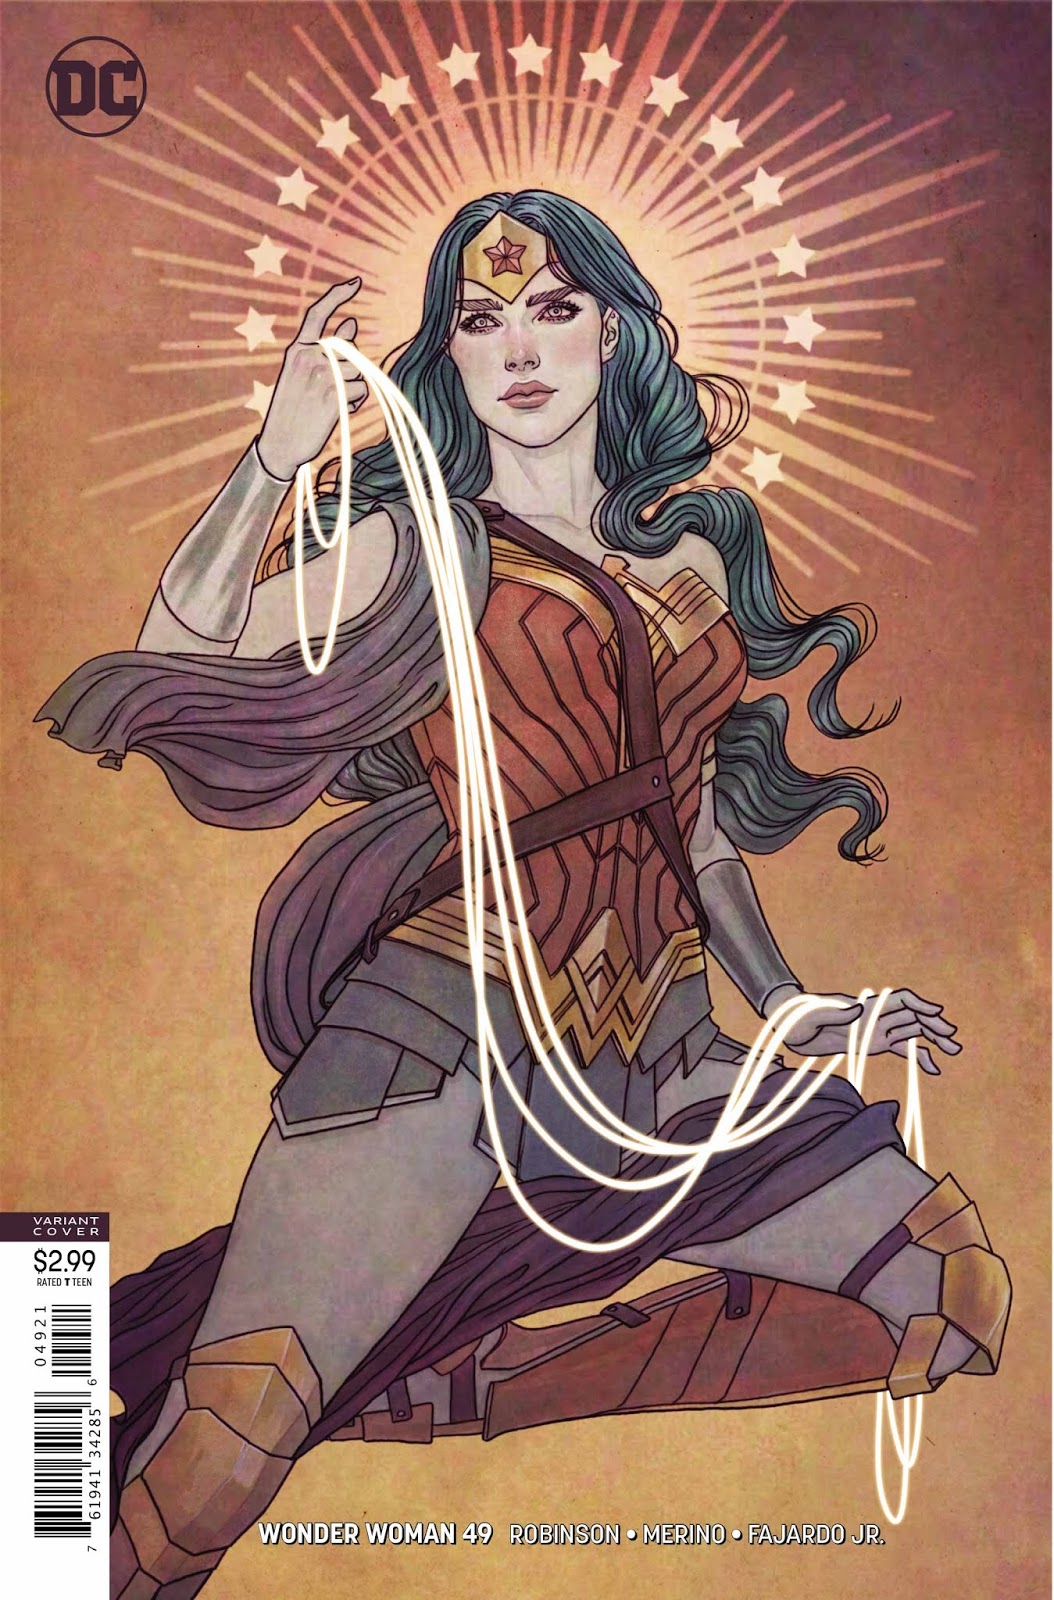 Weird Science DC Comics: PREVIEW: Wonder Woman #49